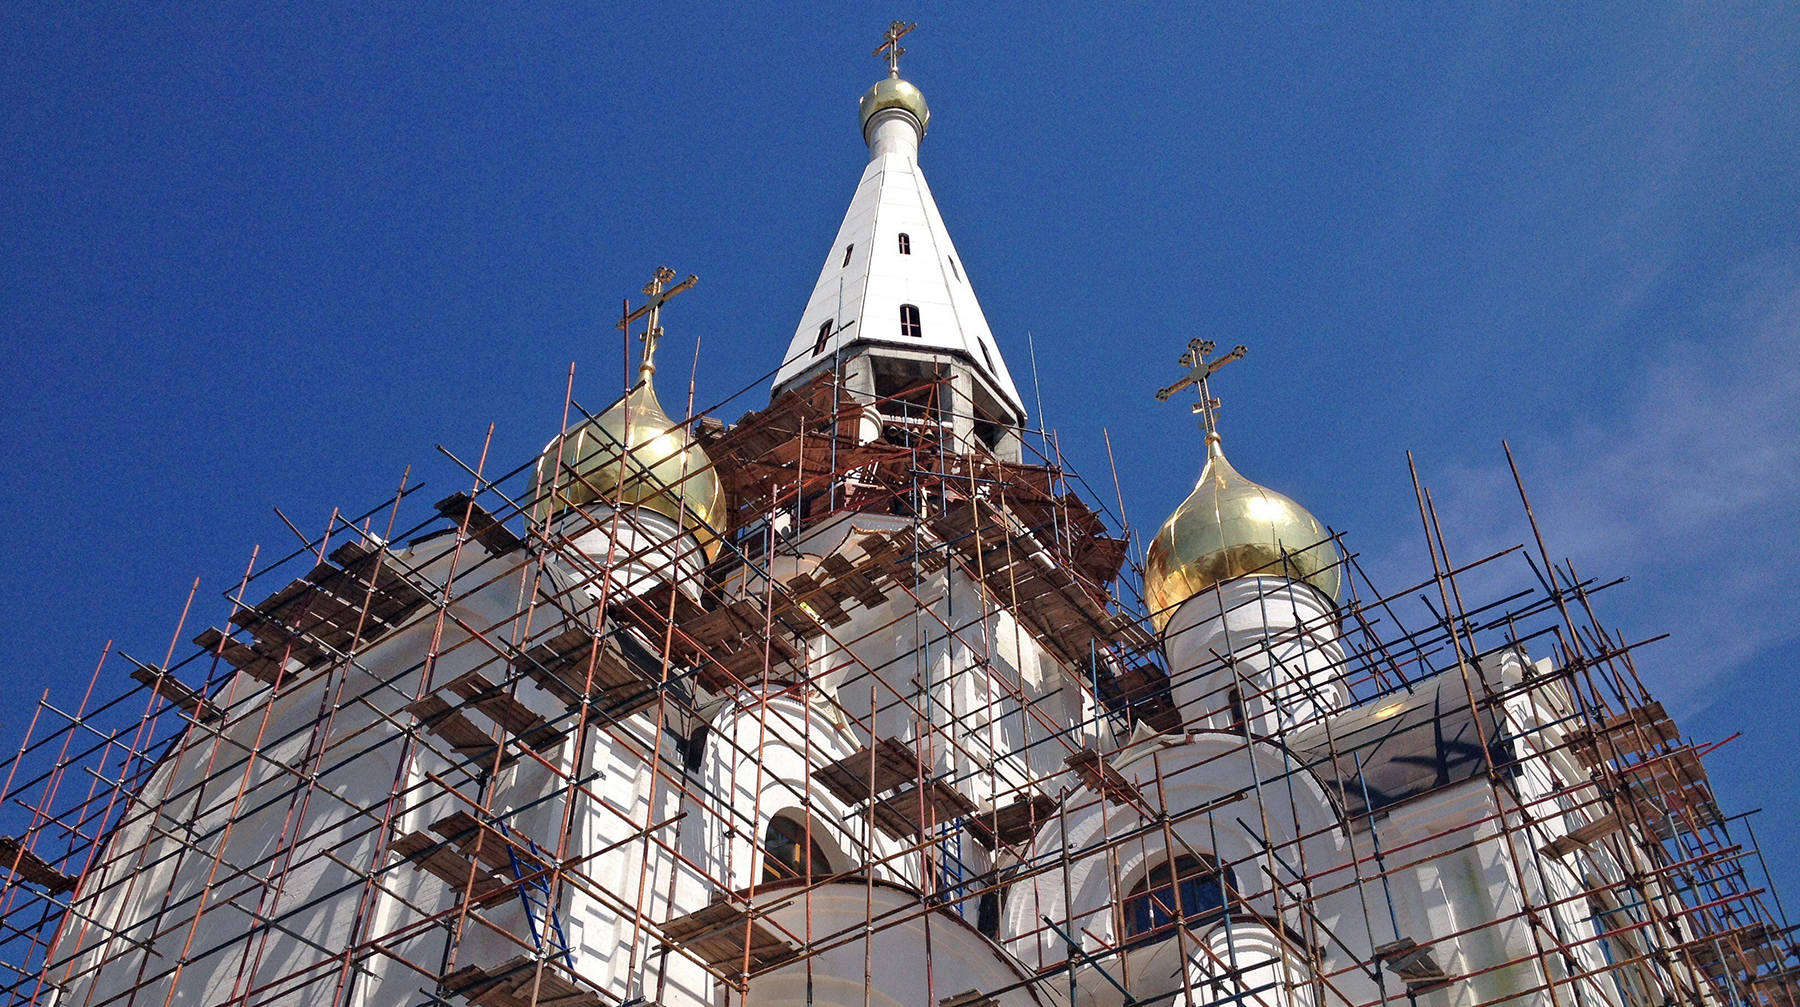 Daily Storm выяснил, что дома Божьи не стоят на кадастровом учете, а значит, являются самостроем Строительство храмов в Западном округе Москвы в рамках «Программы-200»